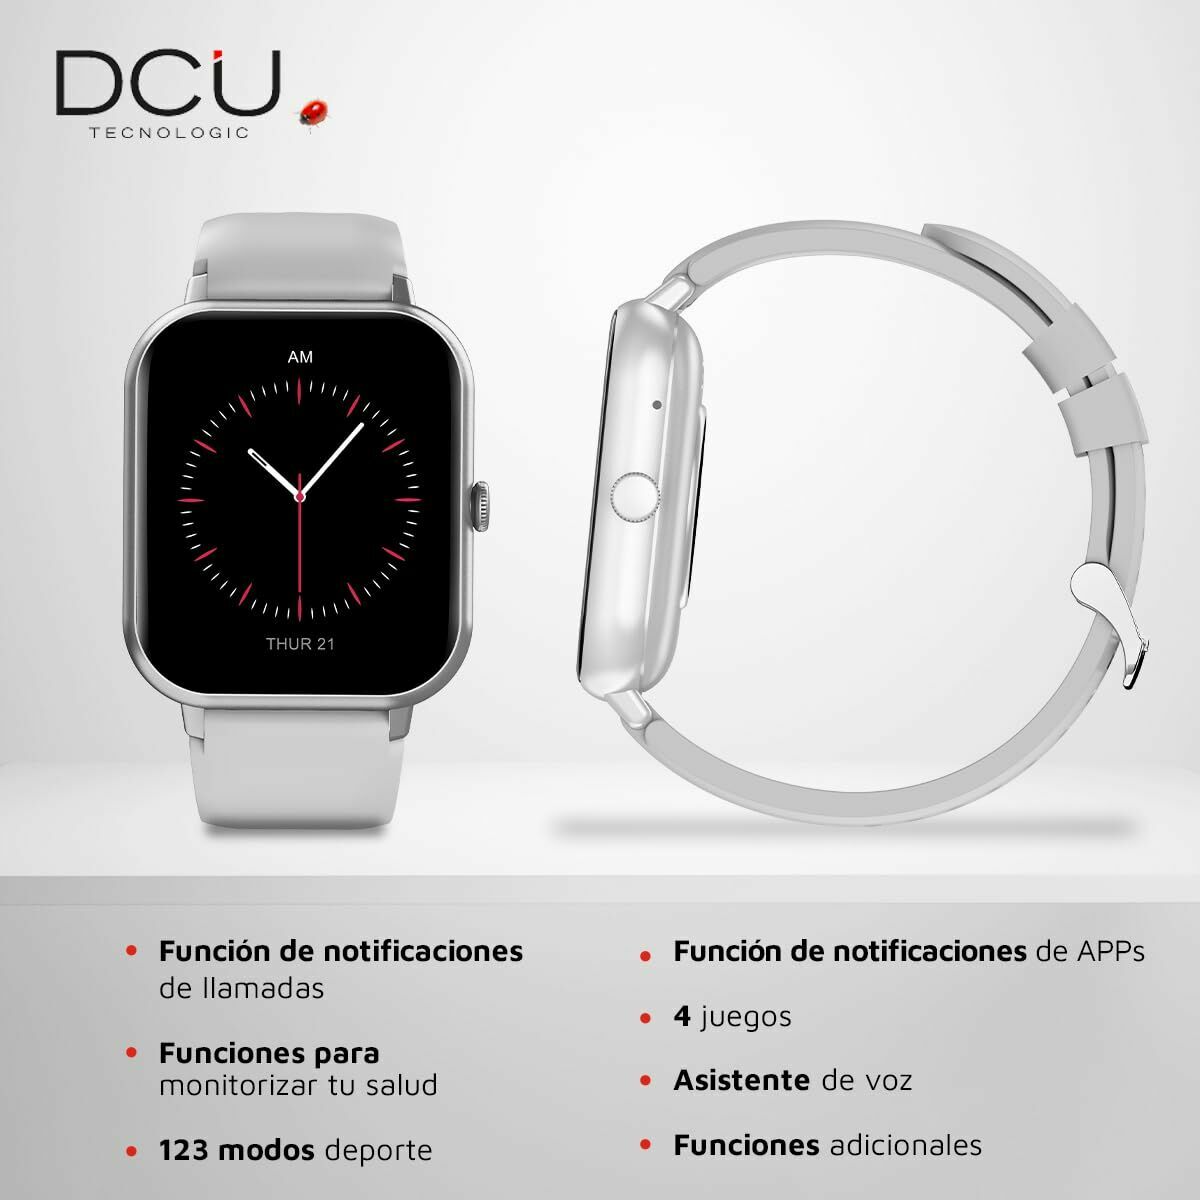 Kaufe Smartwatch DCU CURVED GLASS PRO 1,83" Grau bei AWK Flagship um € 53.00